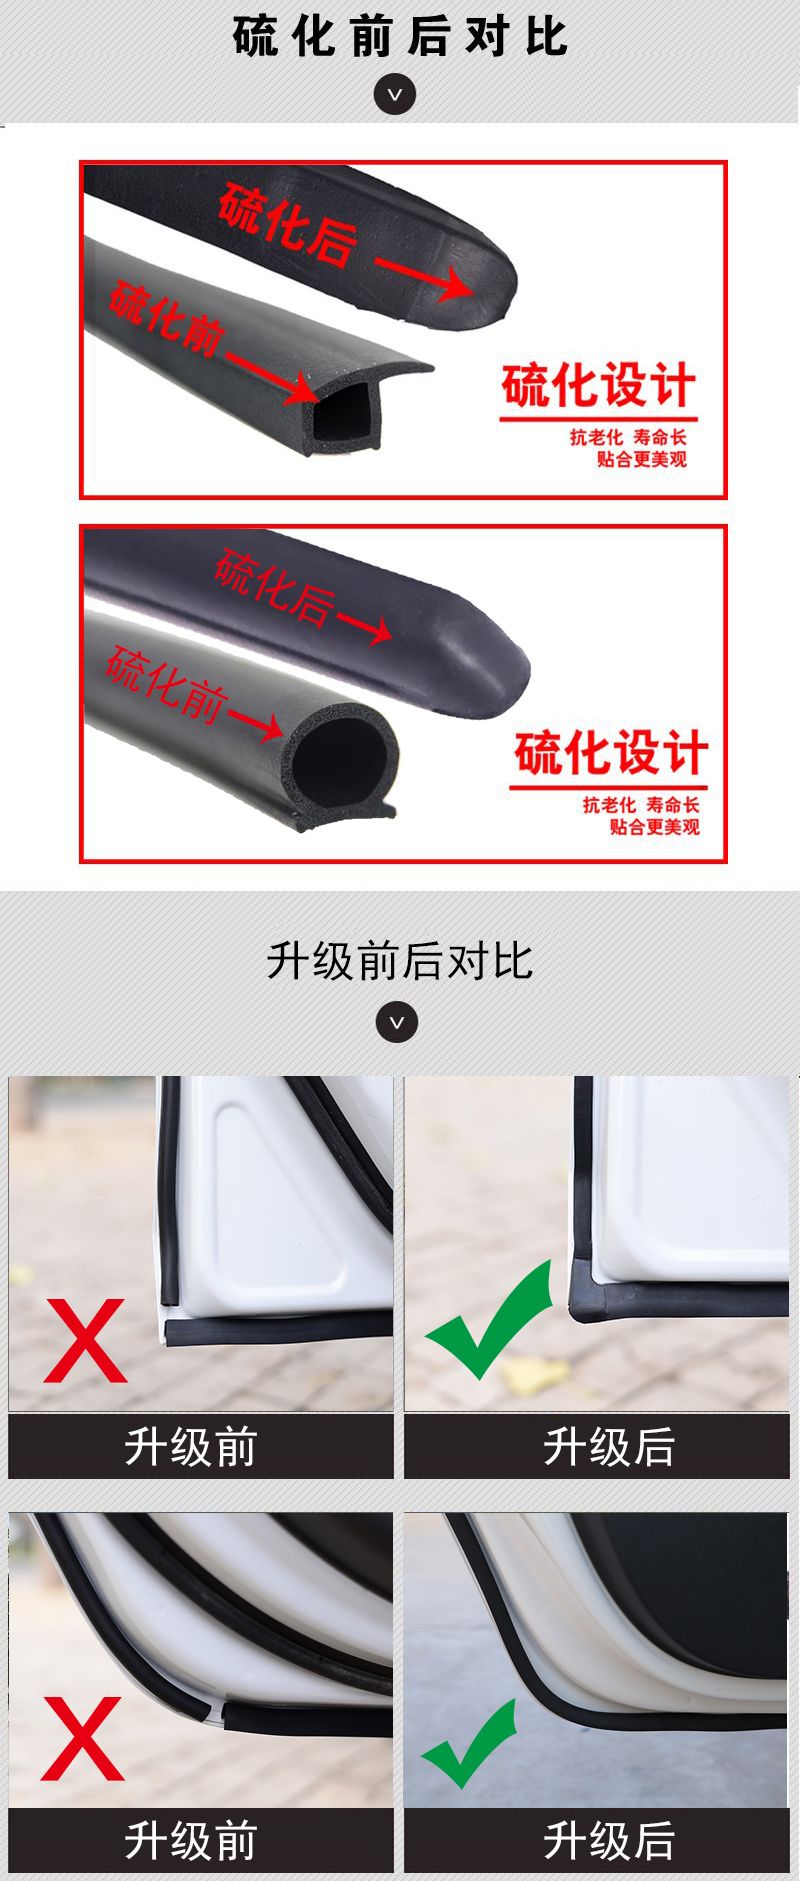 Zhongtai Z500 đặc biệt cửa xe đầy đủ tiếng ồn dải chống bụi niêm phong chống va chạm dải cài đặt phụ kiện sửa đổi chống bụi - Sửa đổi ô tô chổi quét làm sạch ô tô